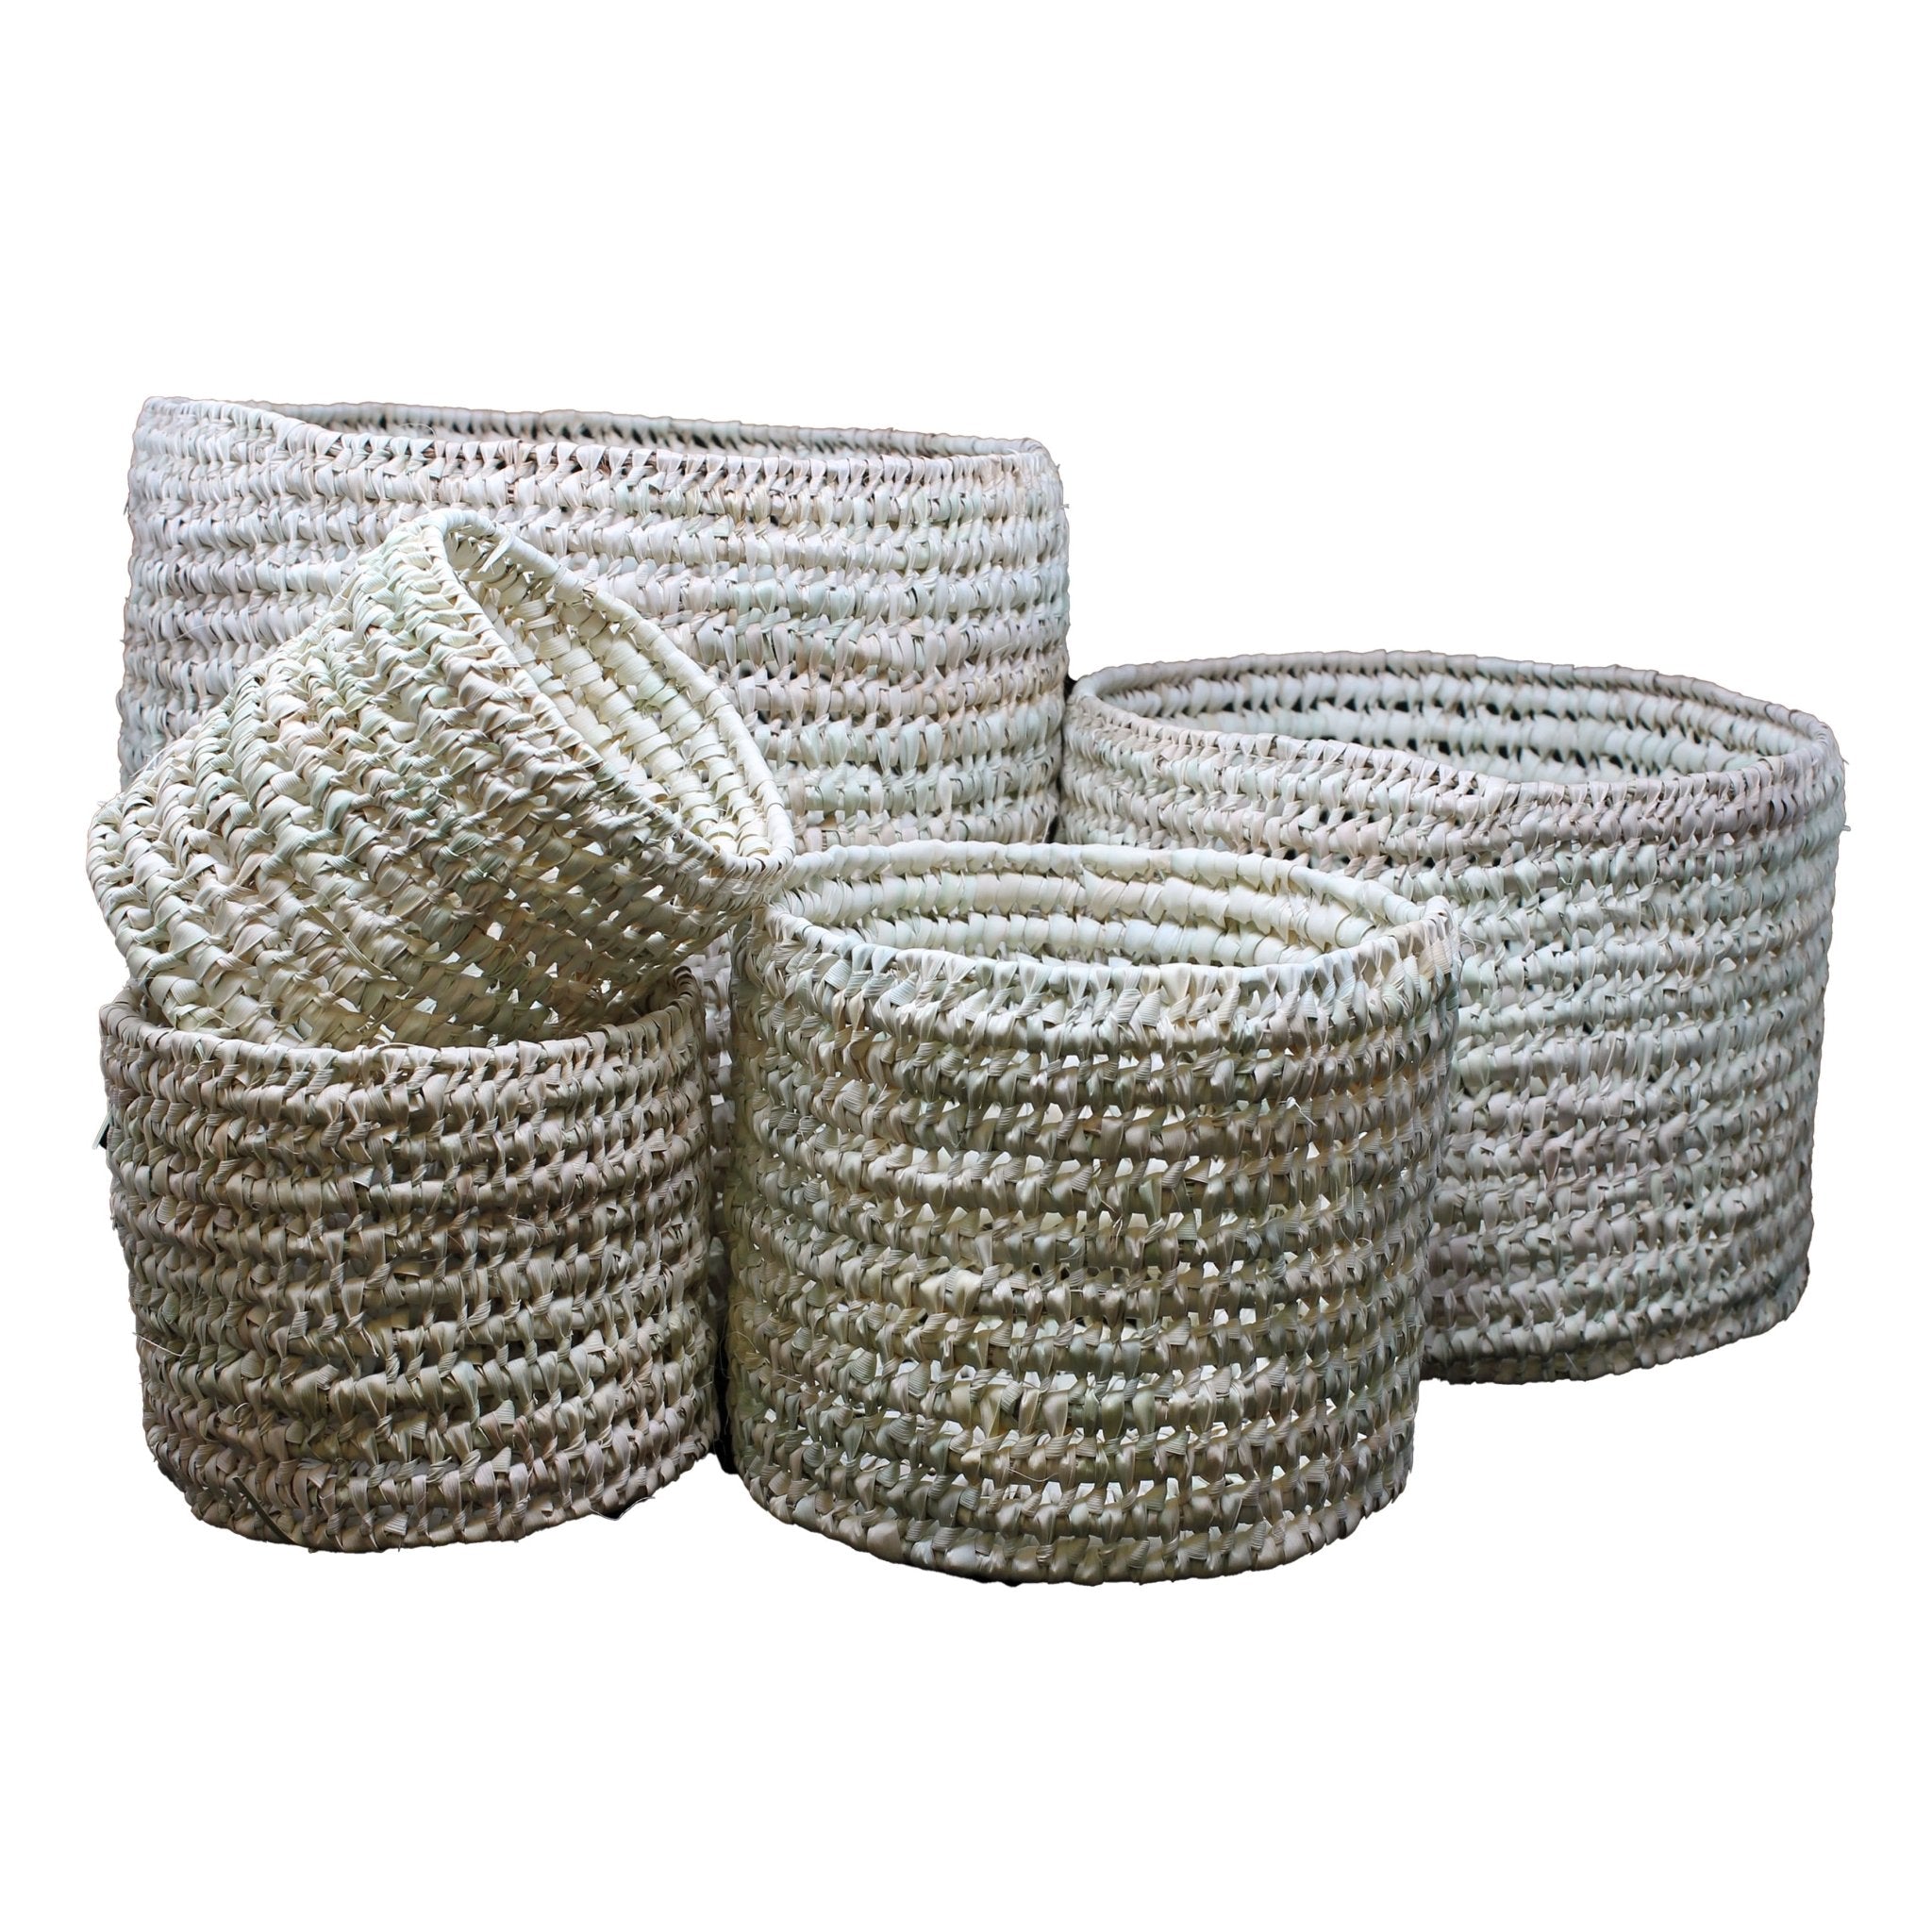 Open Weave Round Storage Basket - Artisan Stories